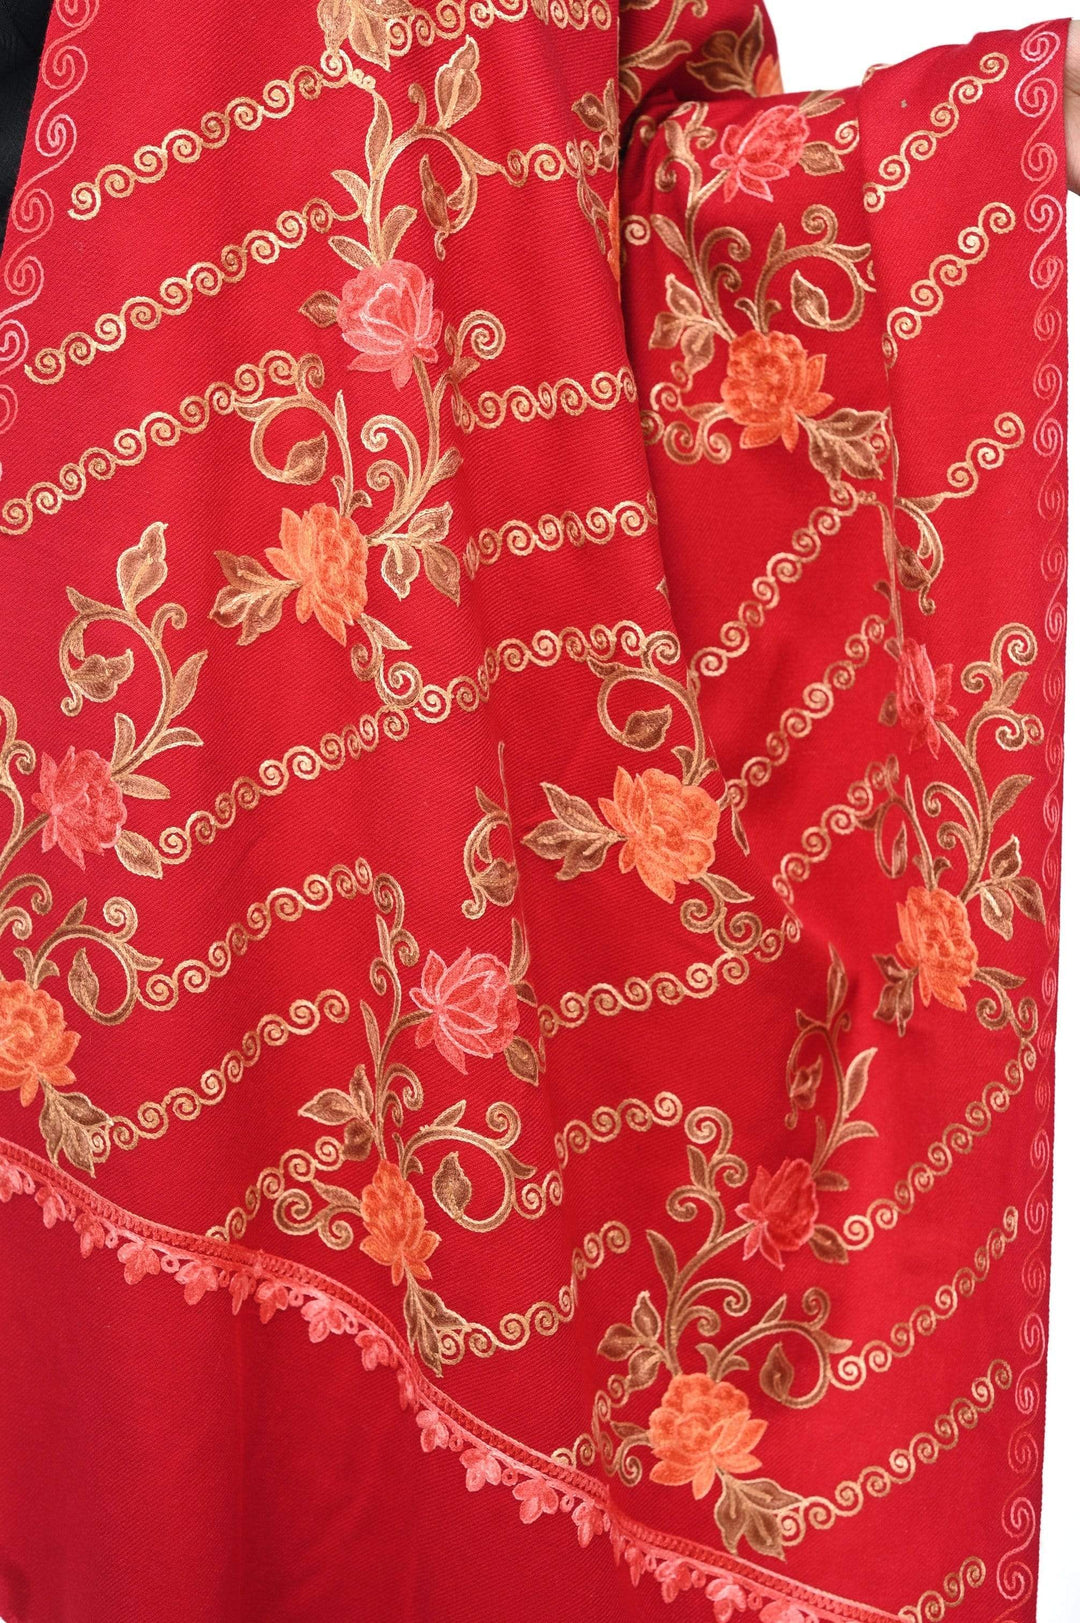 Pashwool 70x200 Pashwool Womens Kashmiri Embroidery Stole, Soft and Warm, Woollen Stole, Maroon